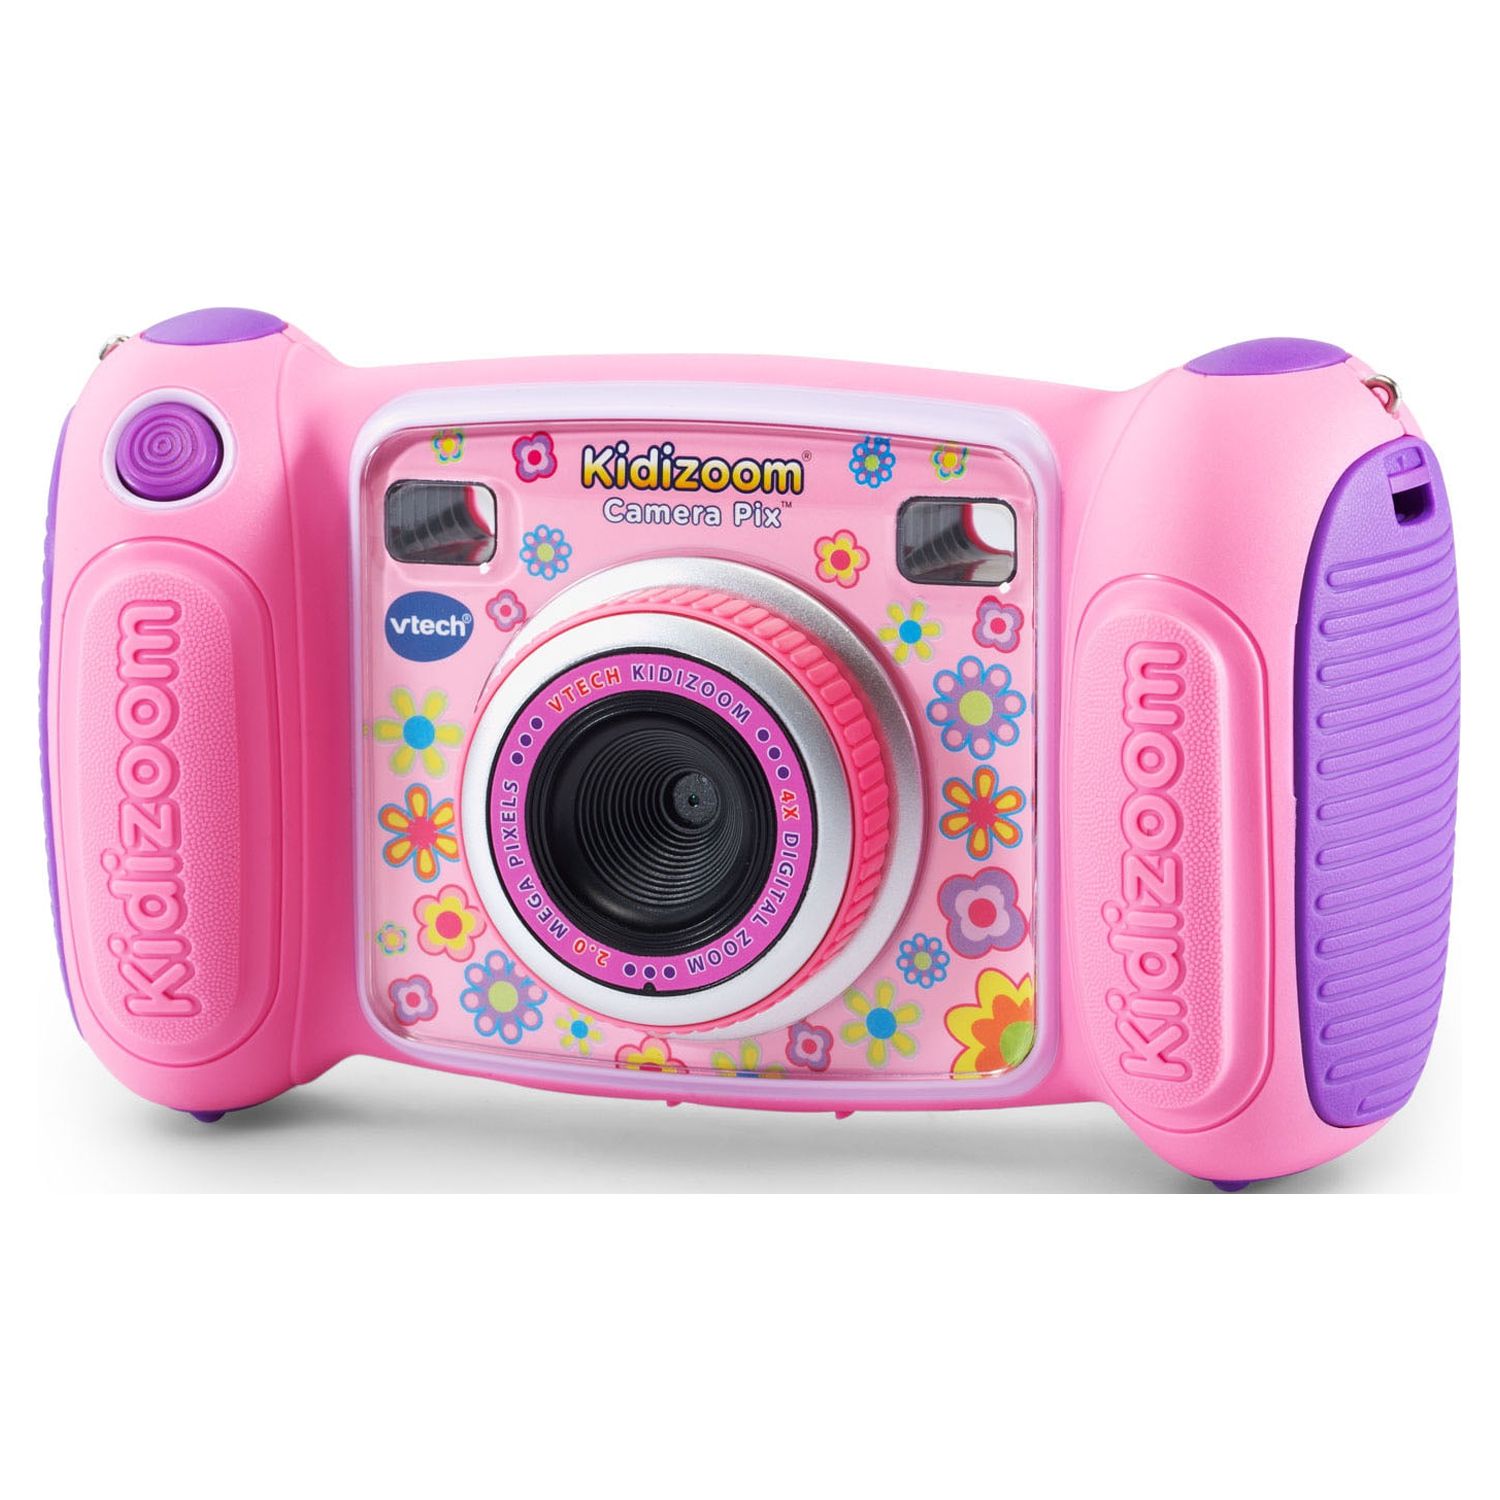 VTech KidiZoom Camera Pix, Real Digital Camera for Kids, Pink - image 5 of 9